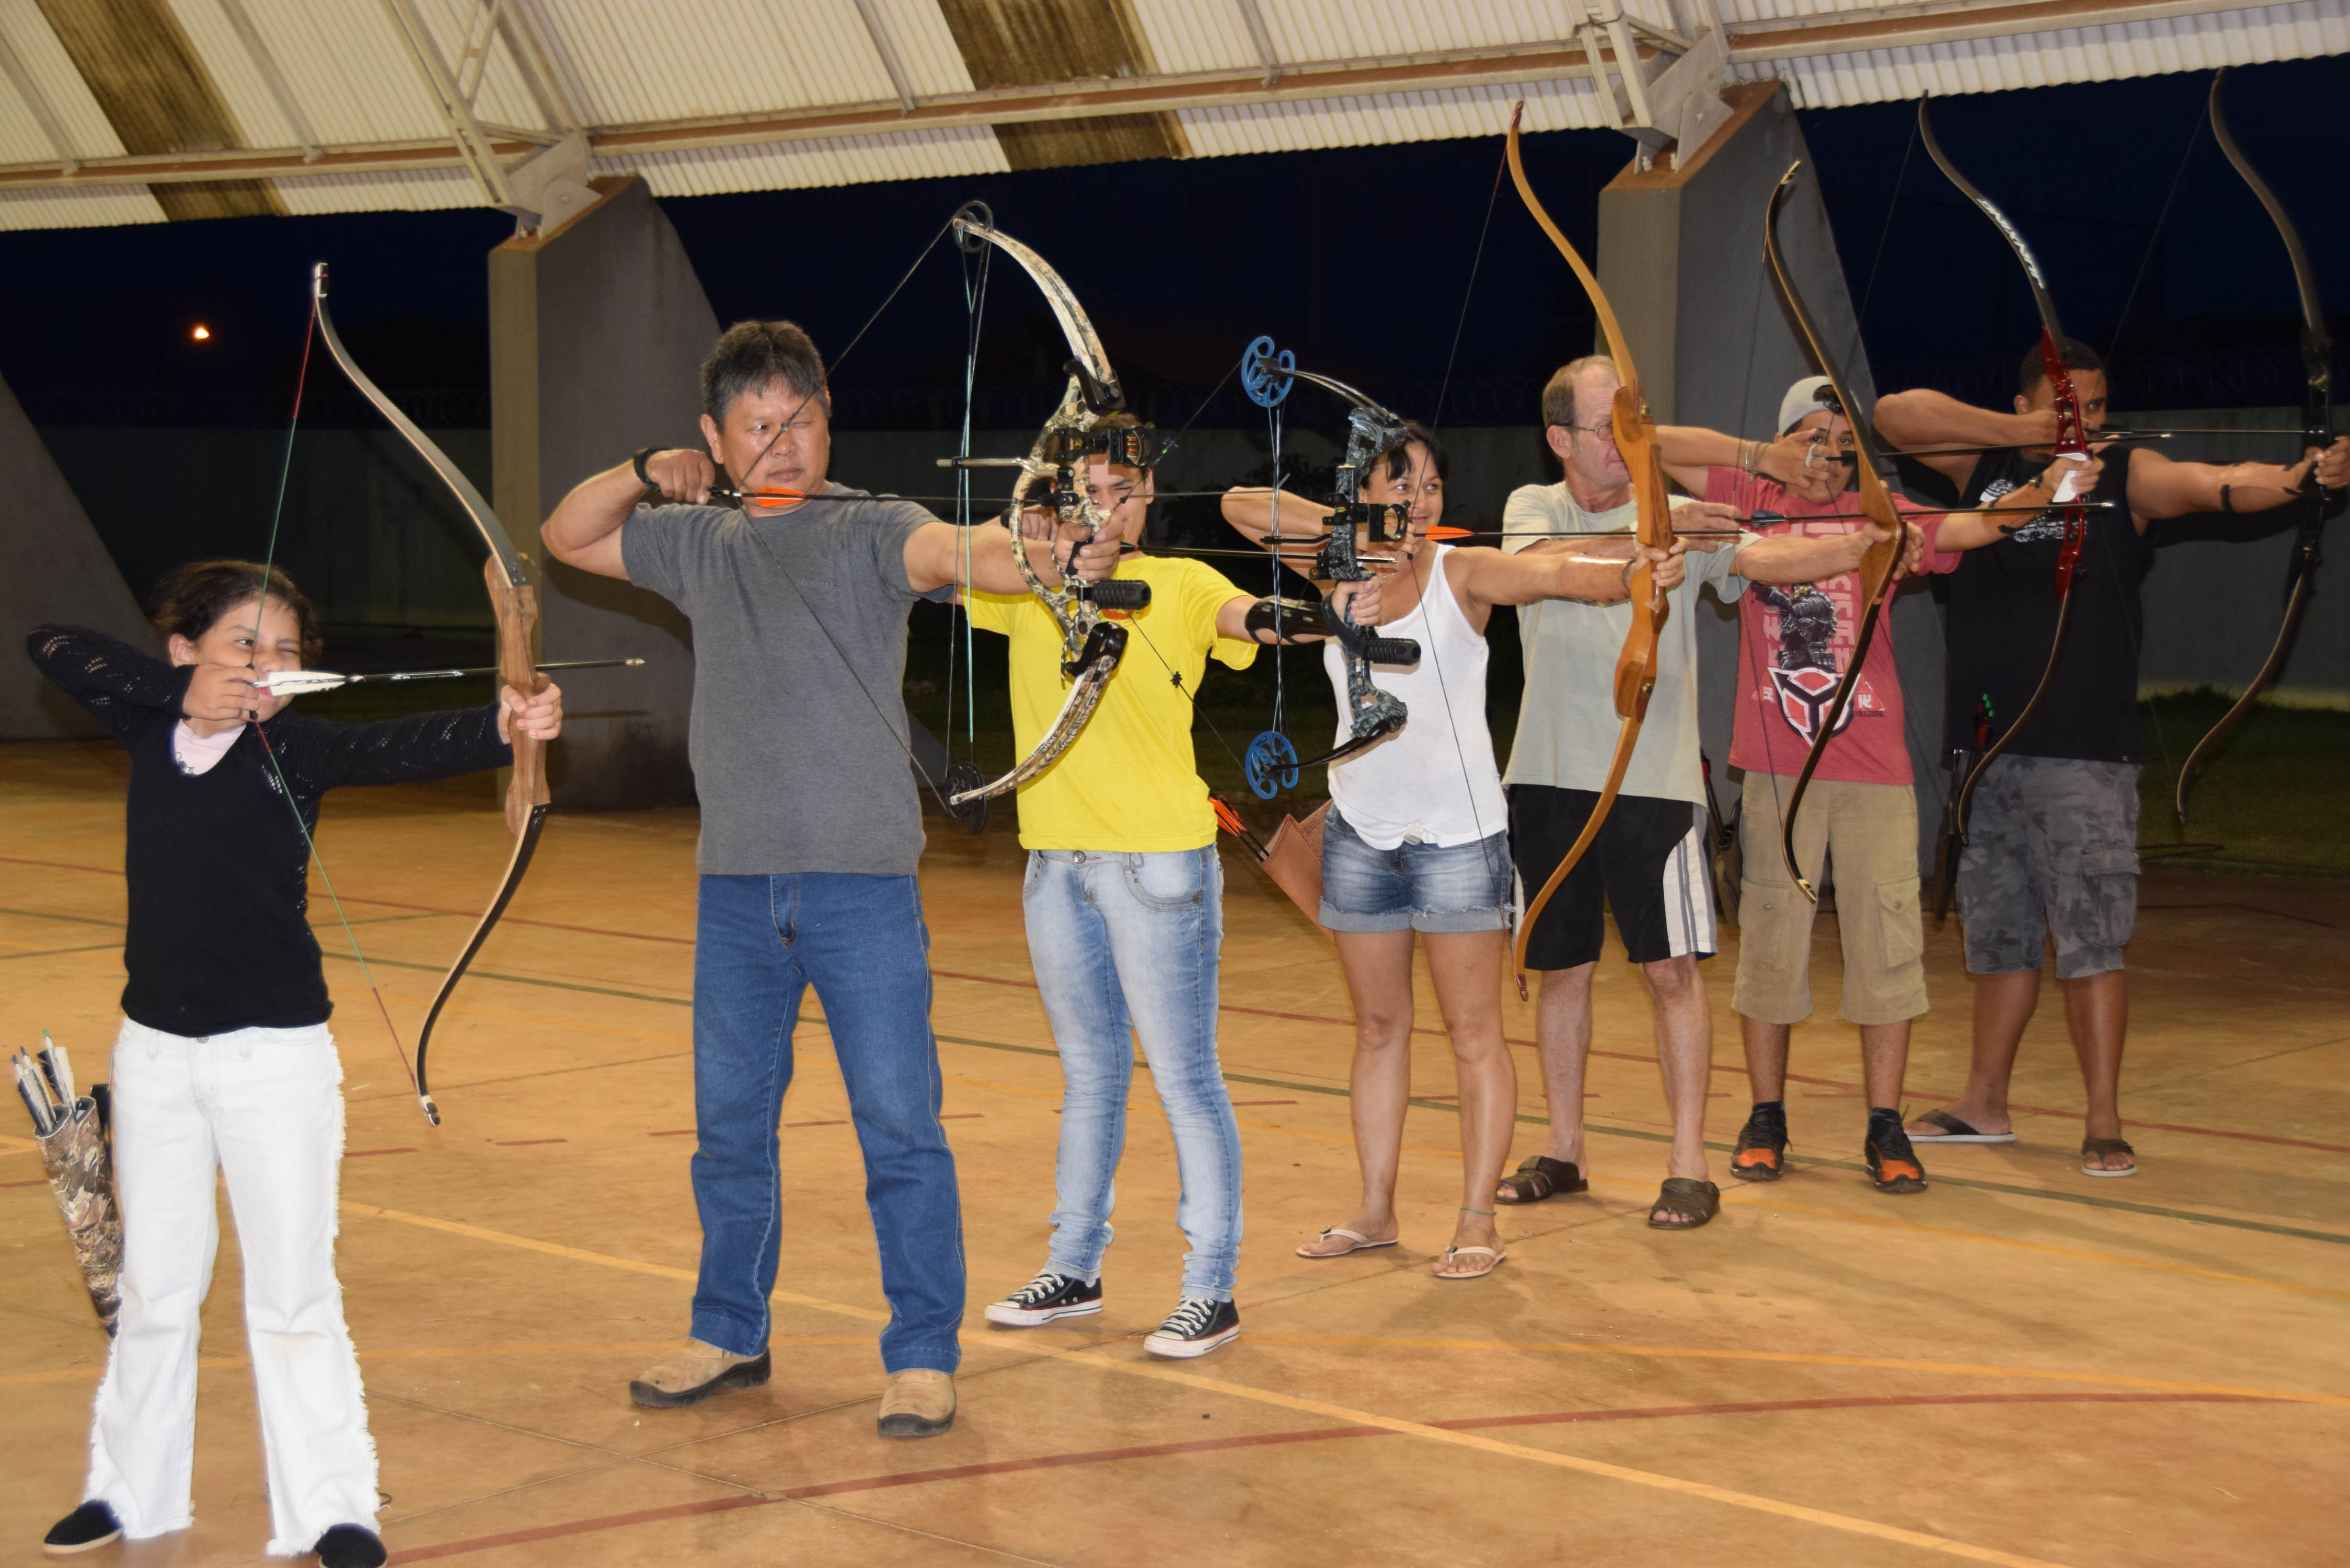 Em Ivaiporã, a prática do tiro com arco vem ganhando popularidade há cerca de três anos (Foto/Ivan Maldonado)